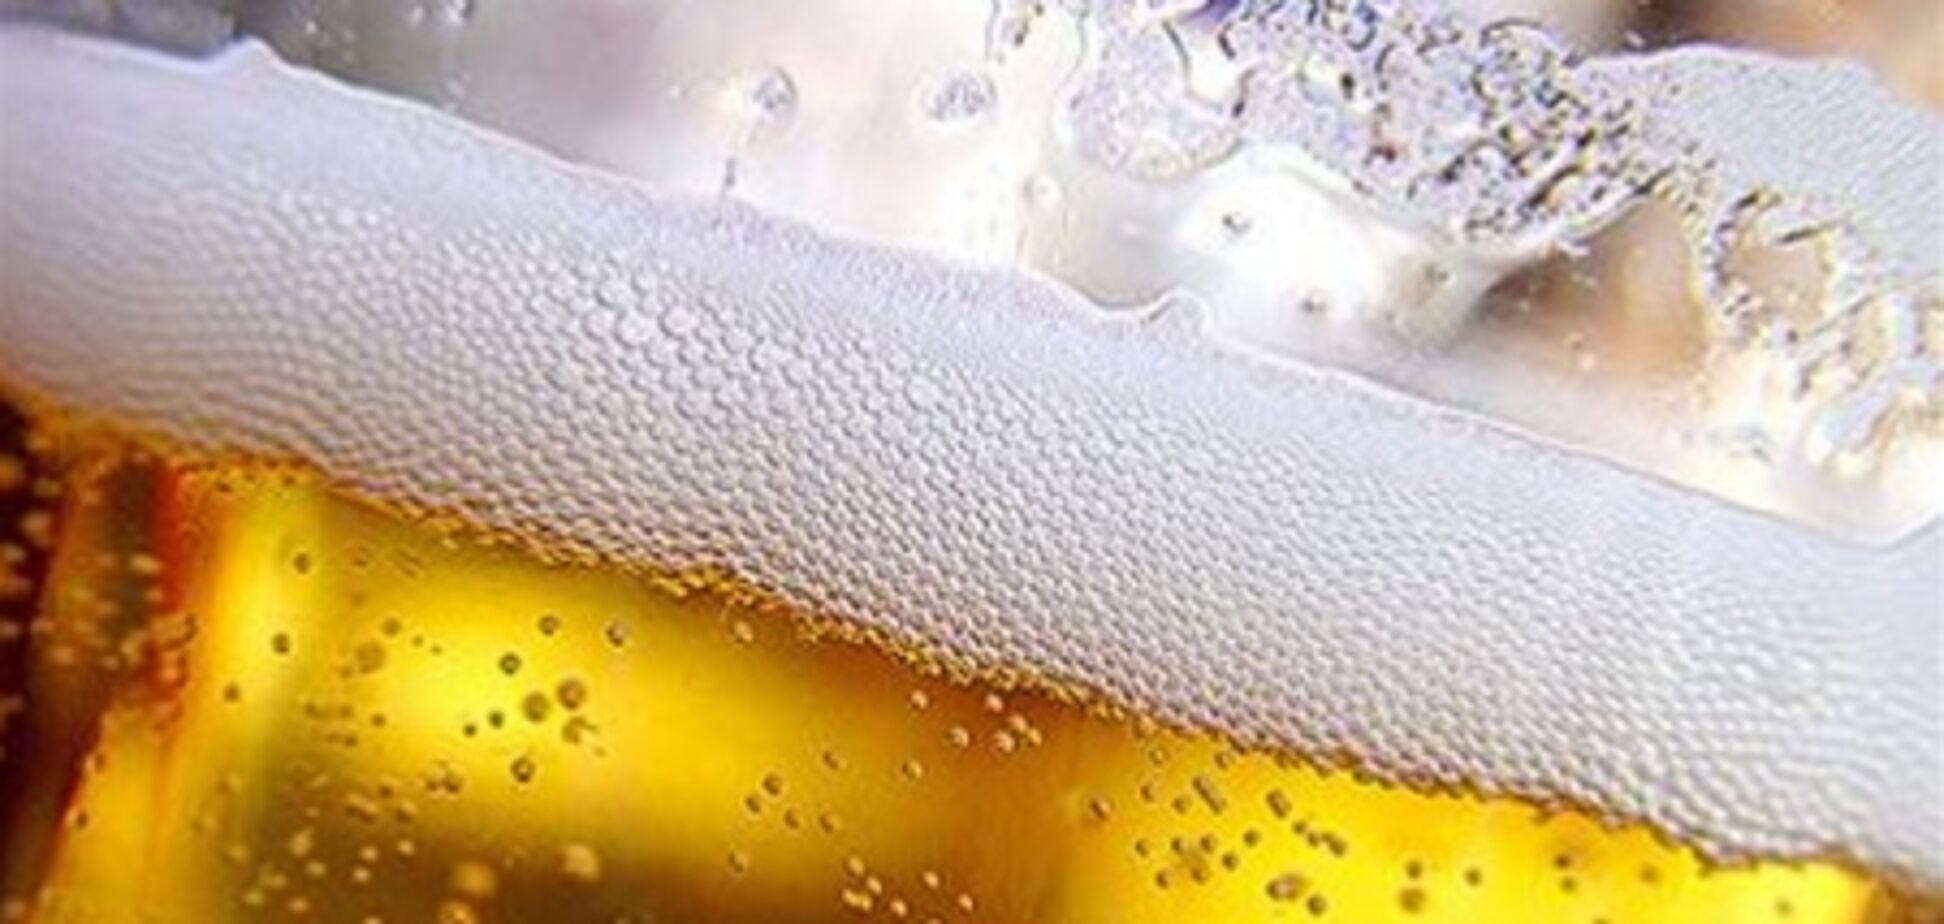 Рада намерена ограничить рекламу пива